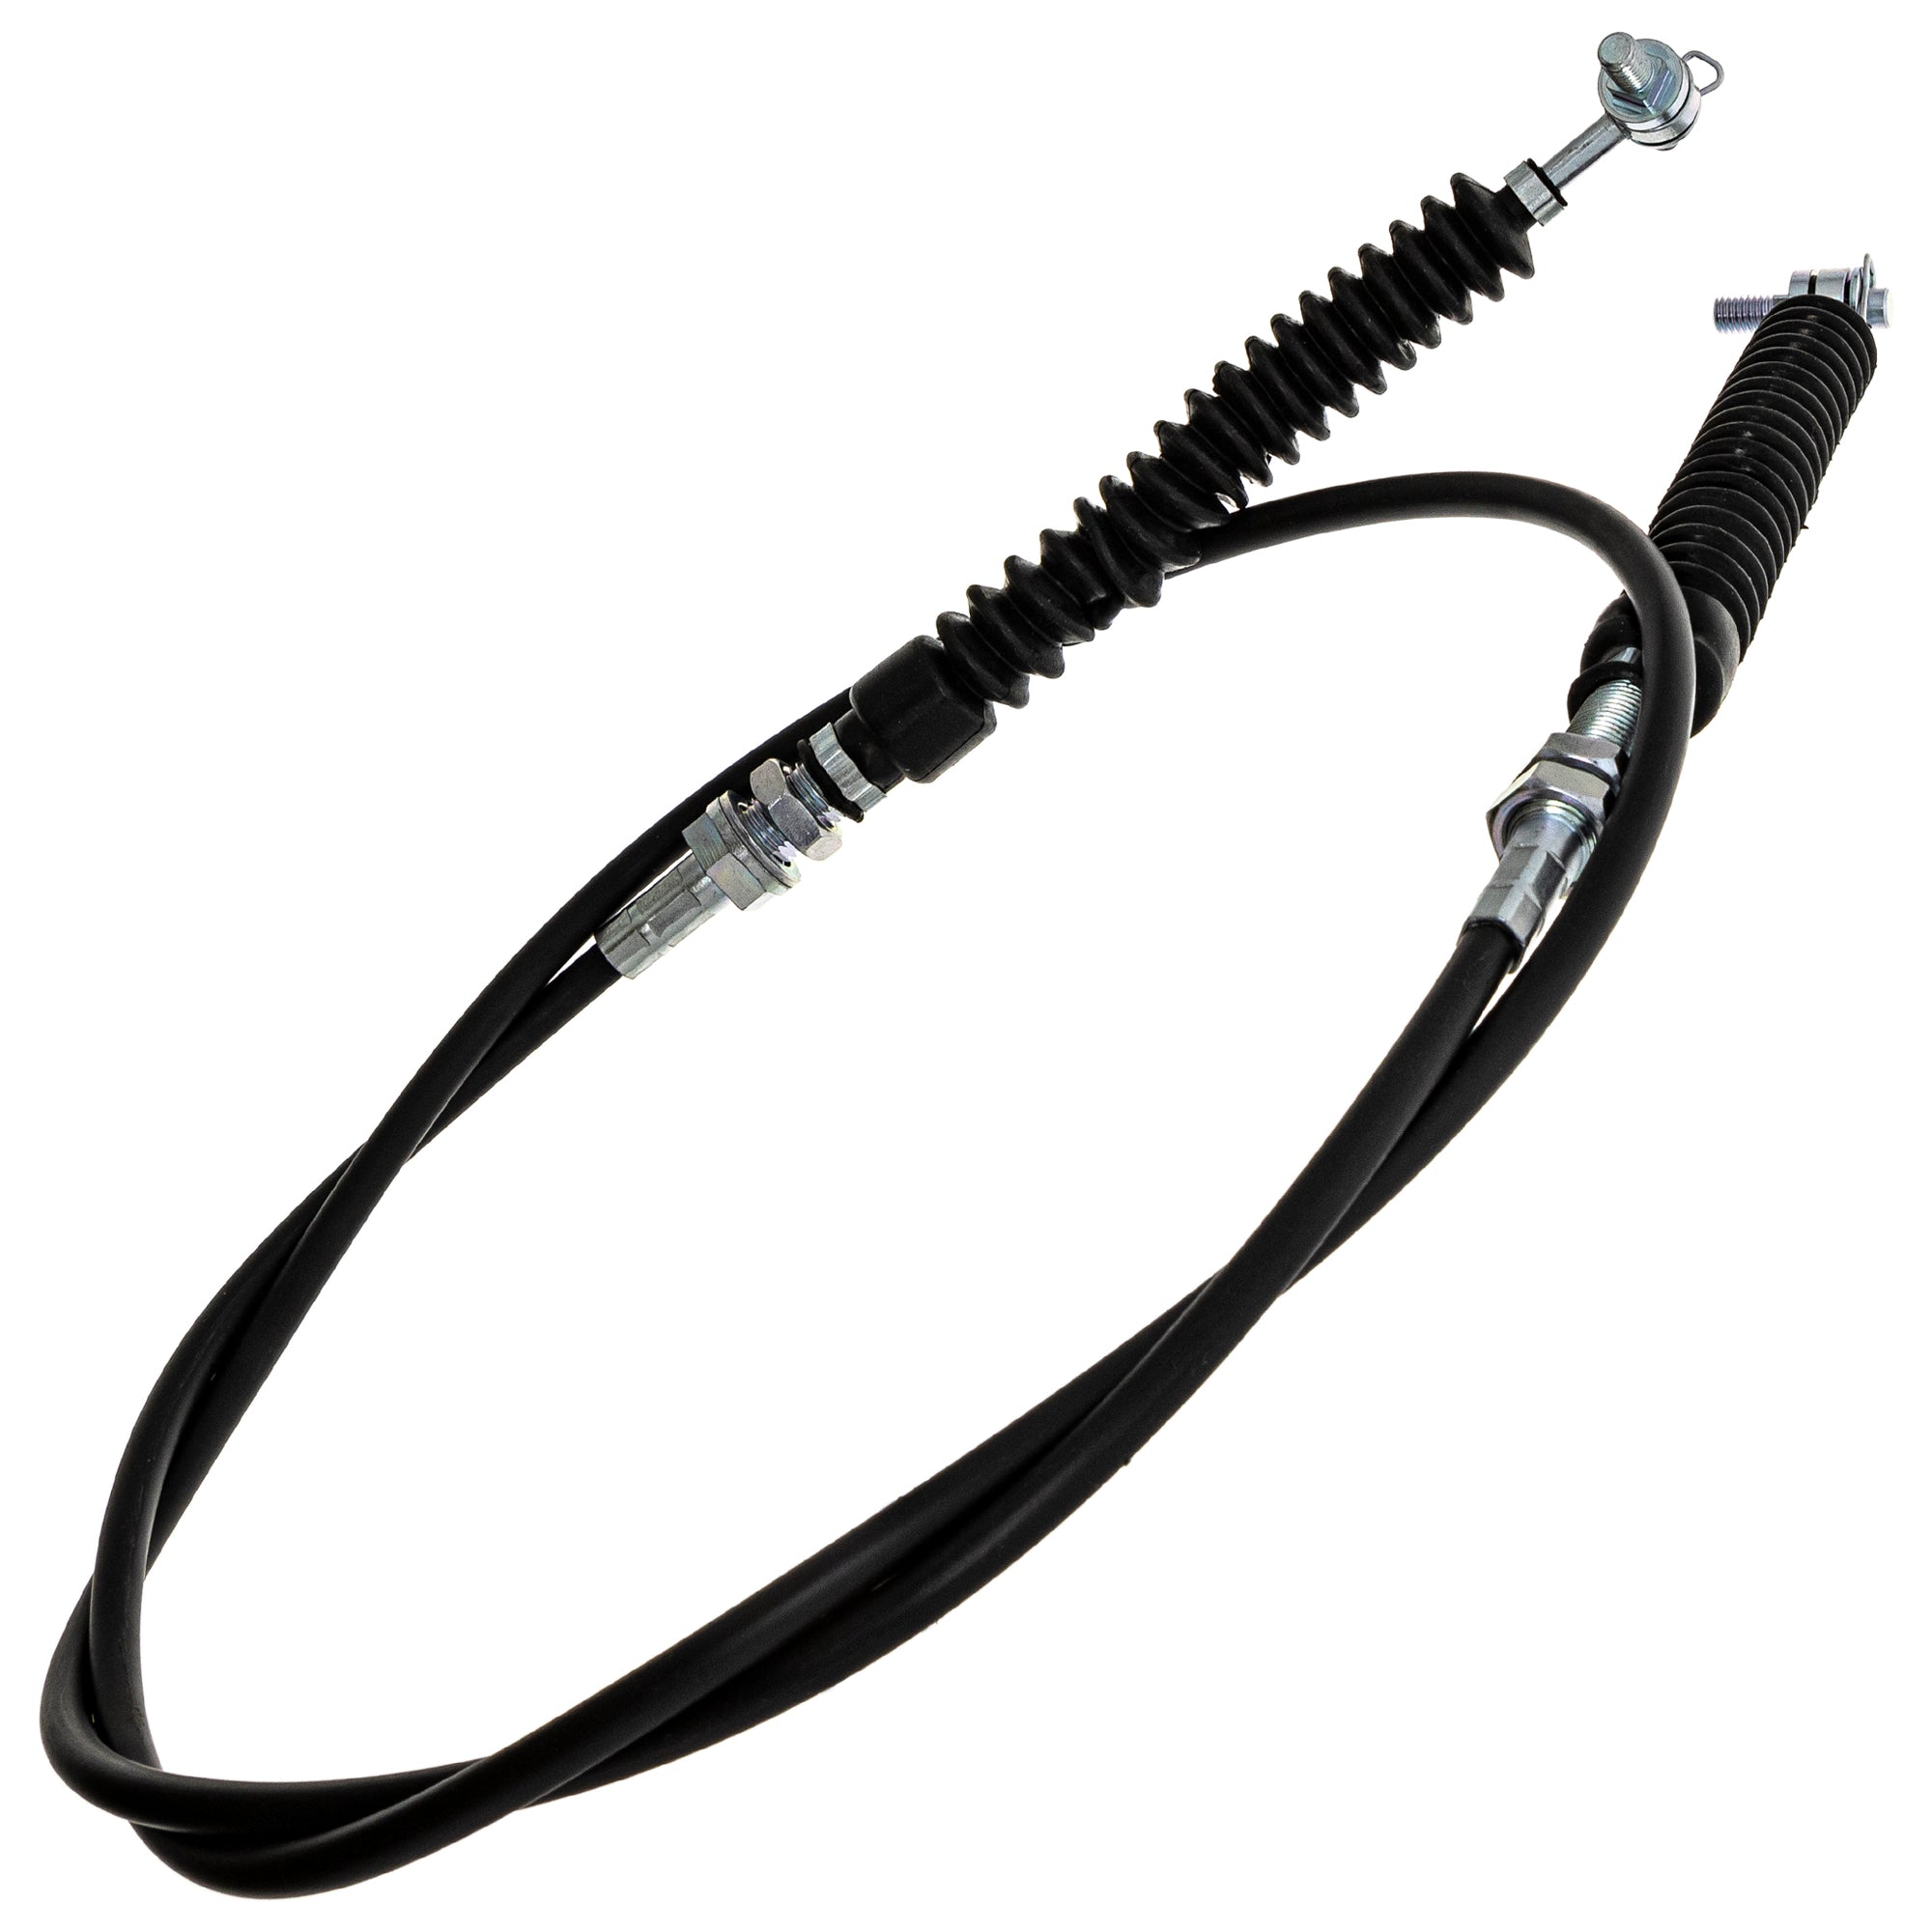 Shifter Cable for Polaris Ranger 500 700 XP 700 EFI 7081209